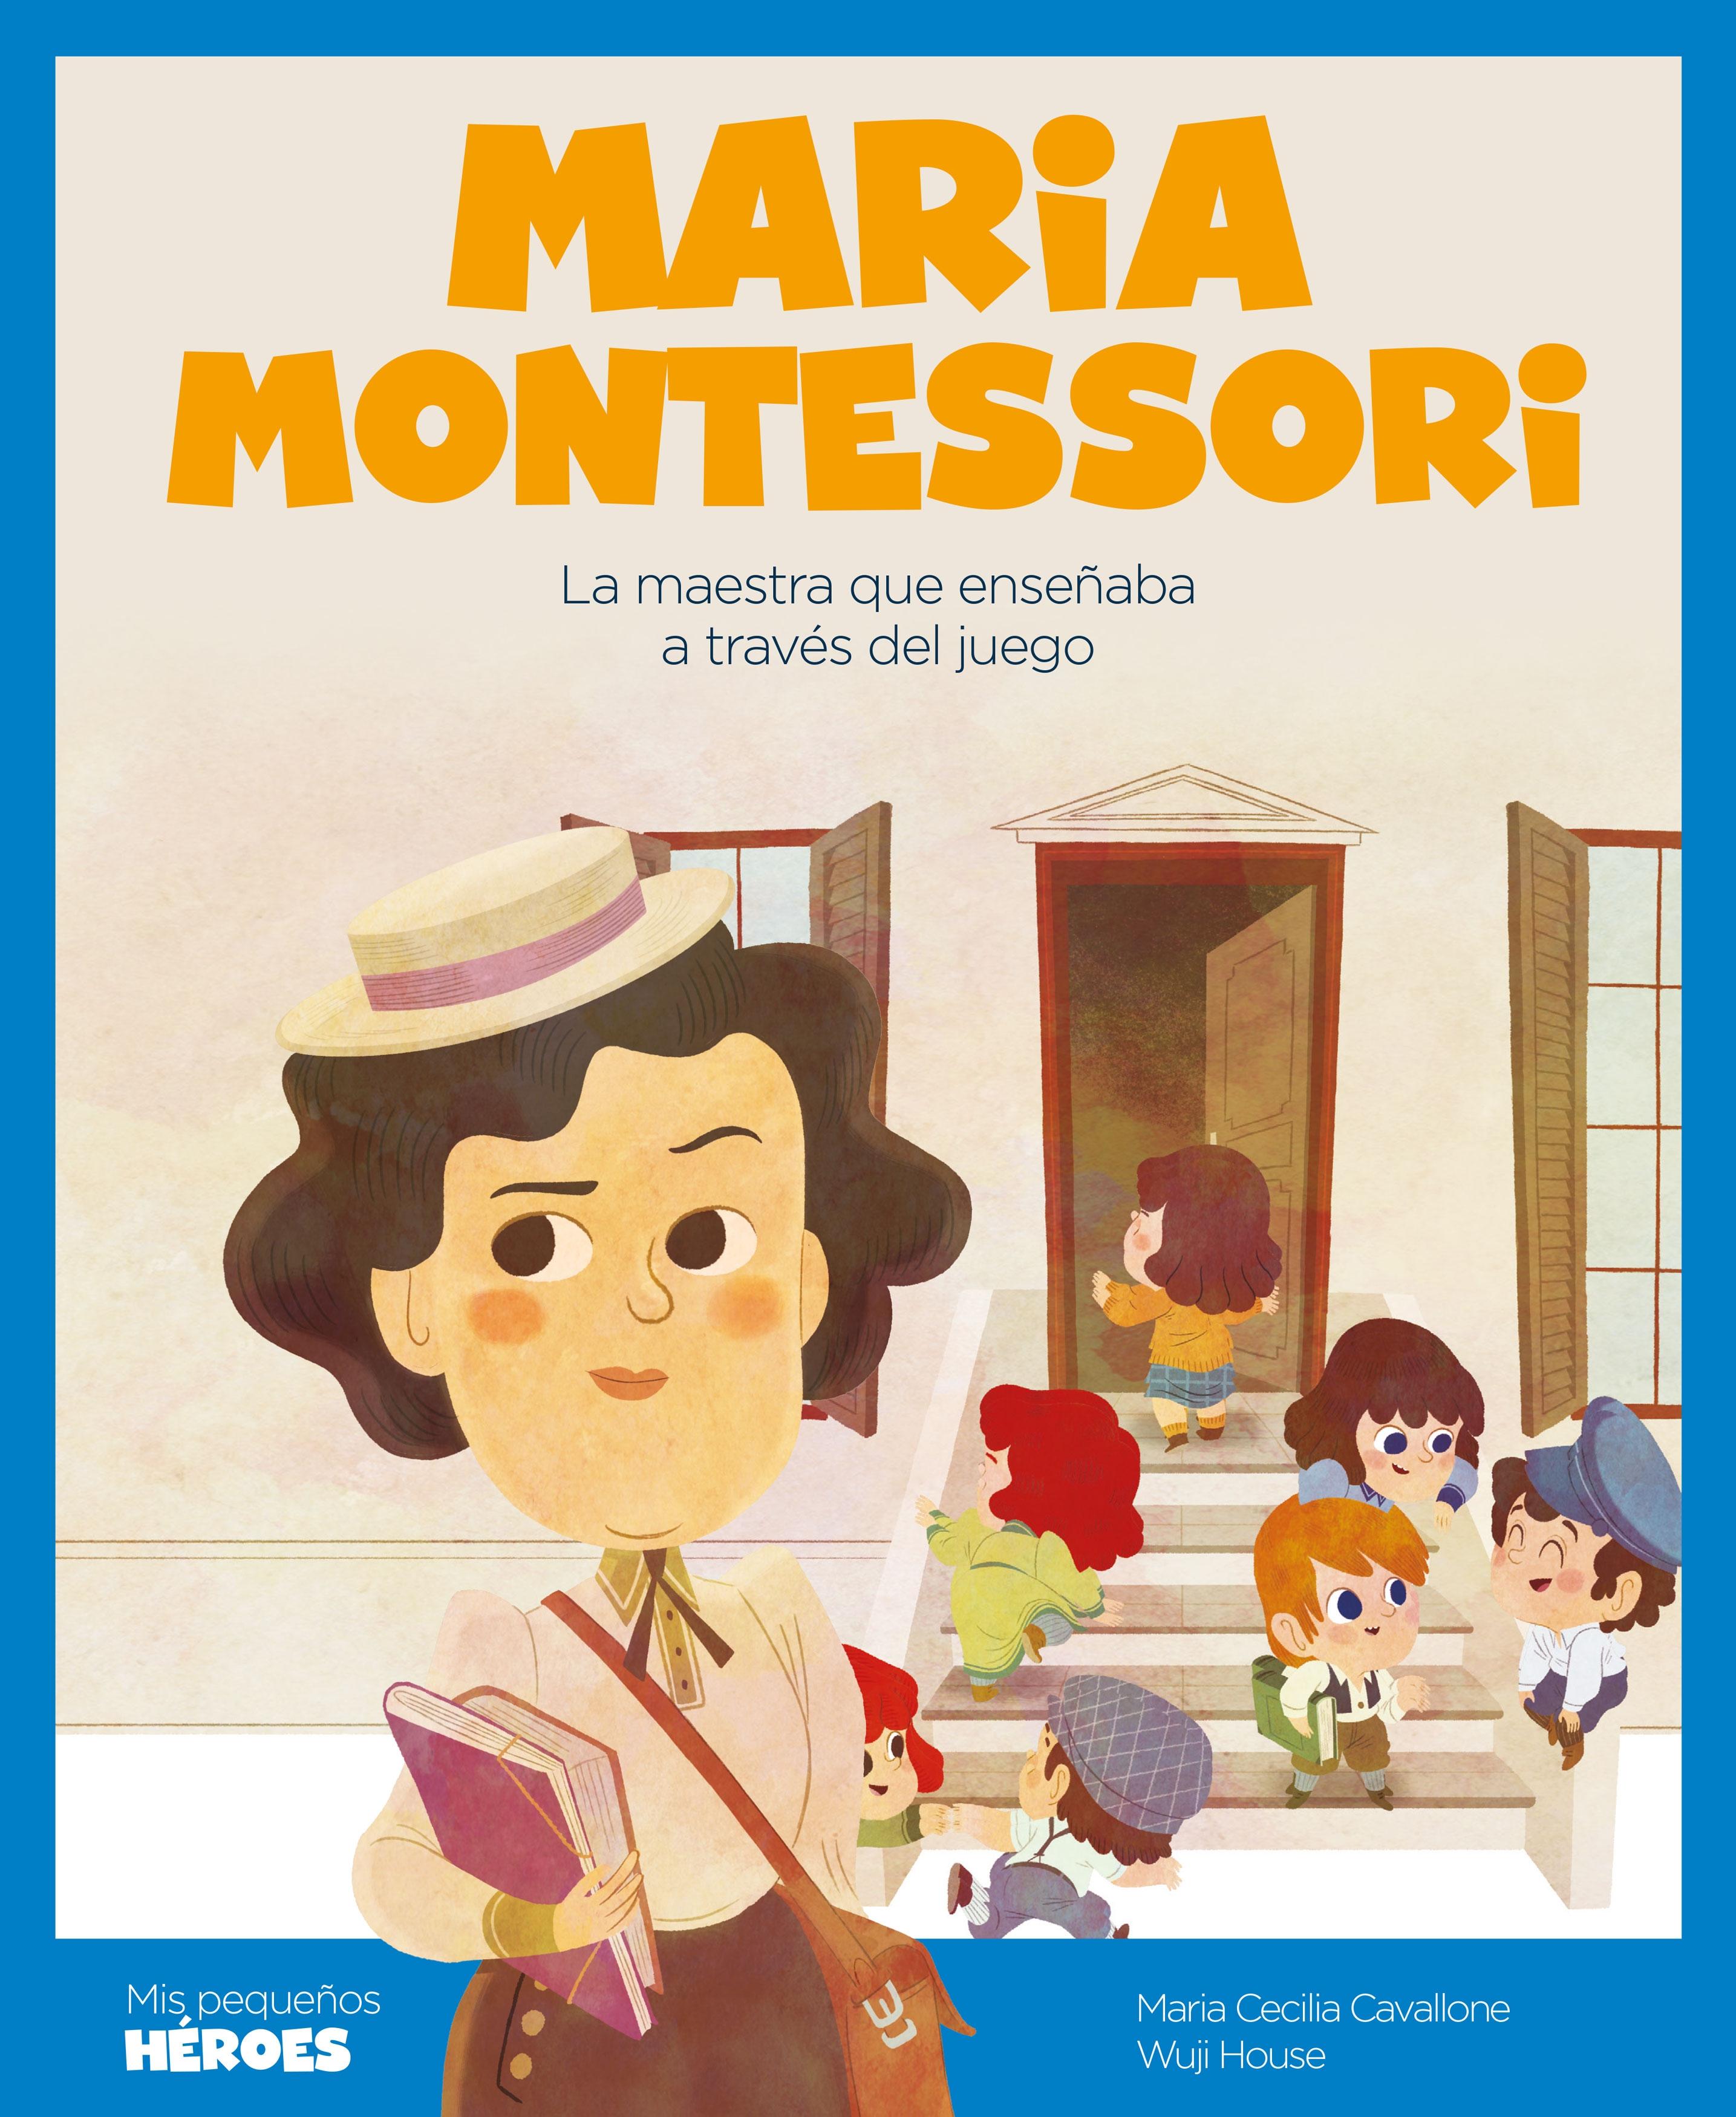 Maria Montessori "La maestra que enseñaba a través del juego"